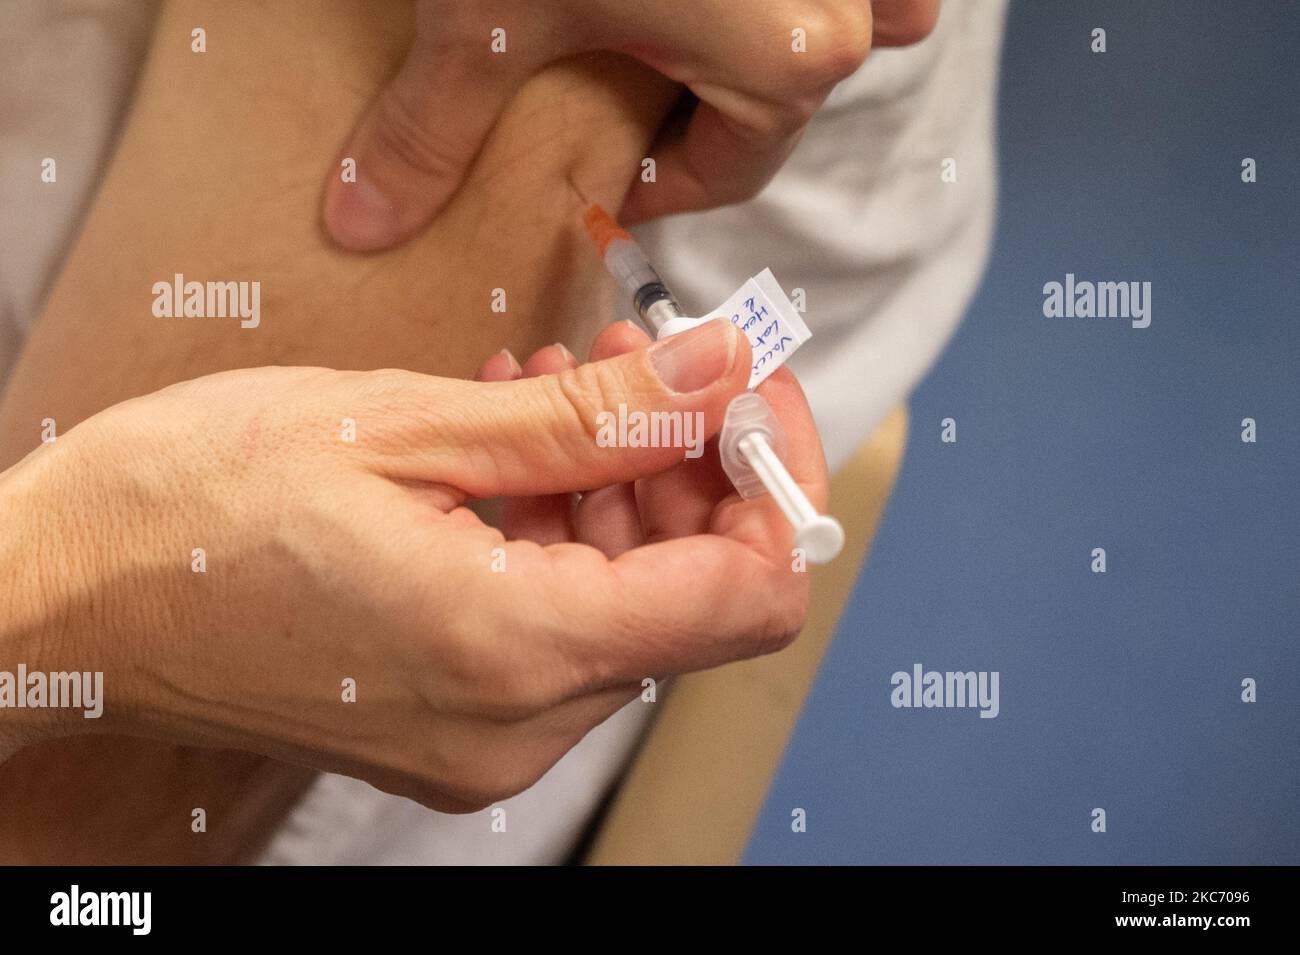 La première phase de vaccination contre Covid 19 a débuté le 5 janvier 2021 à Ille-et-Vilaine, en France. Les premières injections du vaccin à ARN messager Pfizer-BioNTech ont eu lieu en 5 dans le département d'Ephad. (Photo par Estelle Ruiz/NurPhoto) Banque D'Images